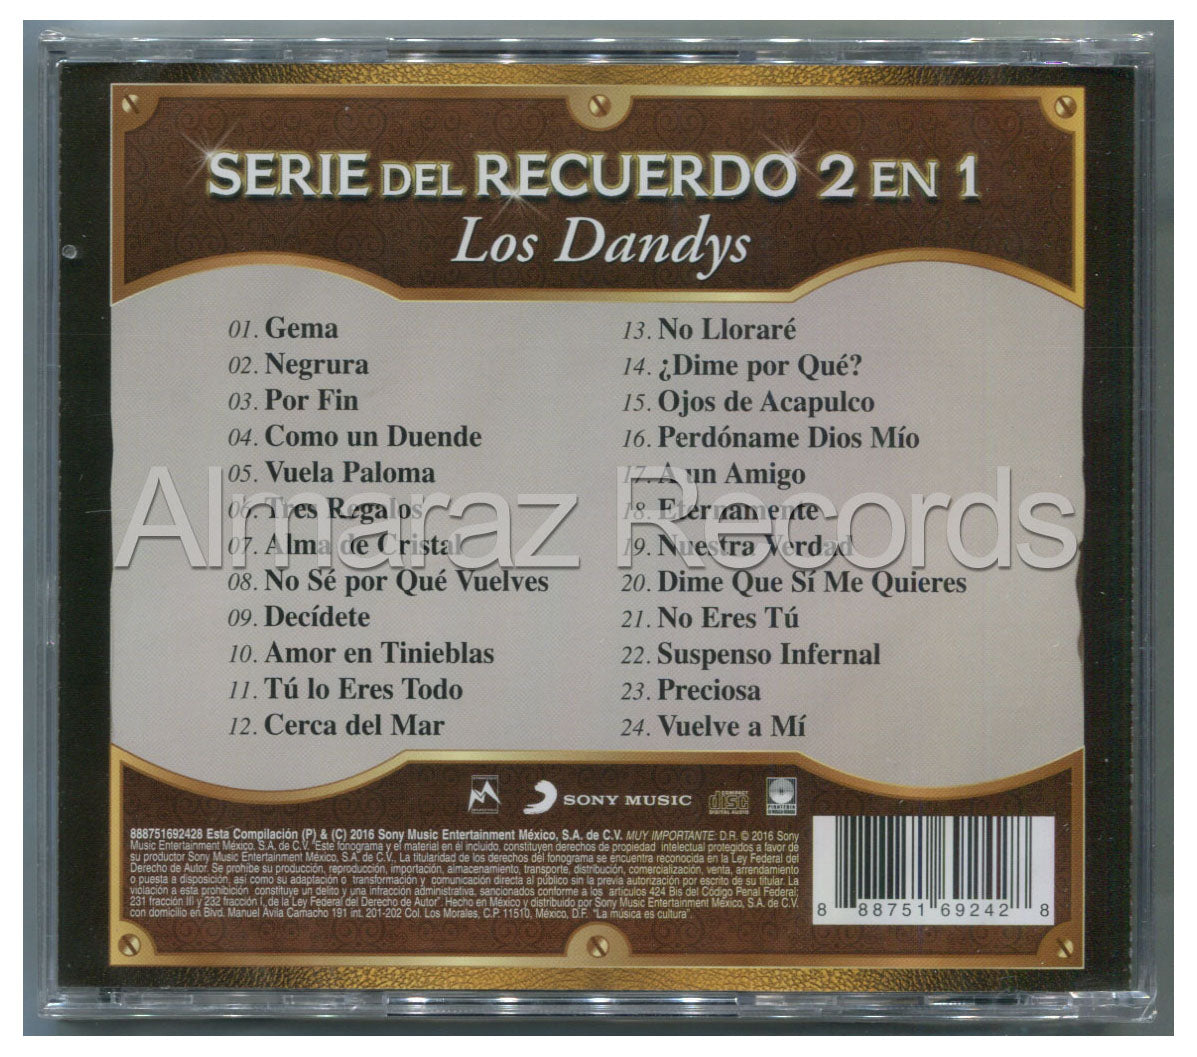 Los Dandy's Serie Del Recuerdo 2 En 1 CD - Almaraz Records | Tienda de Discos y Películas
 - 2